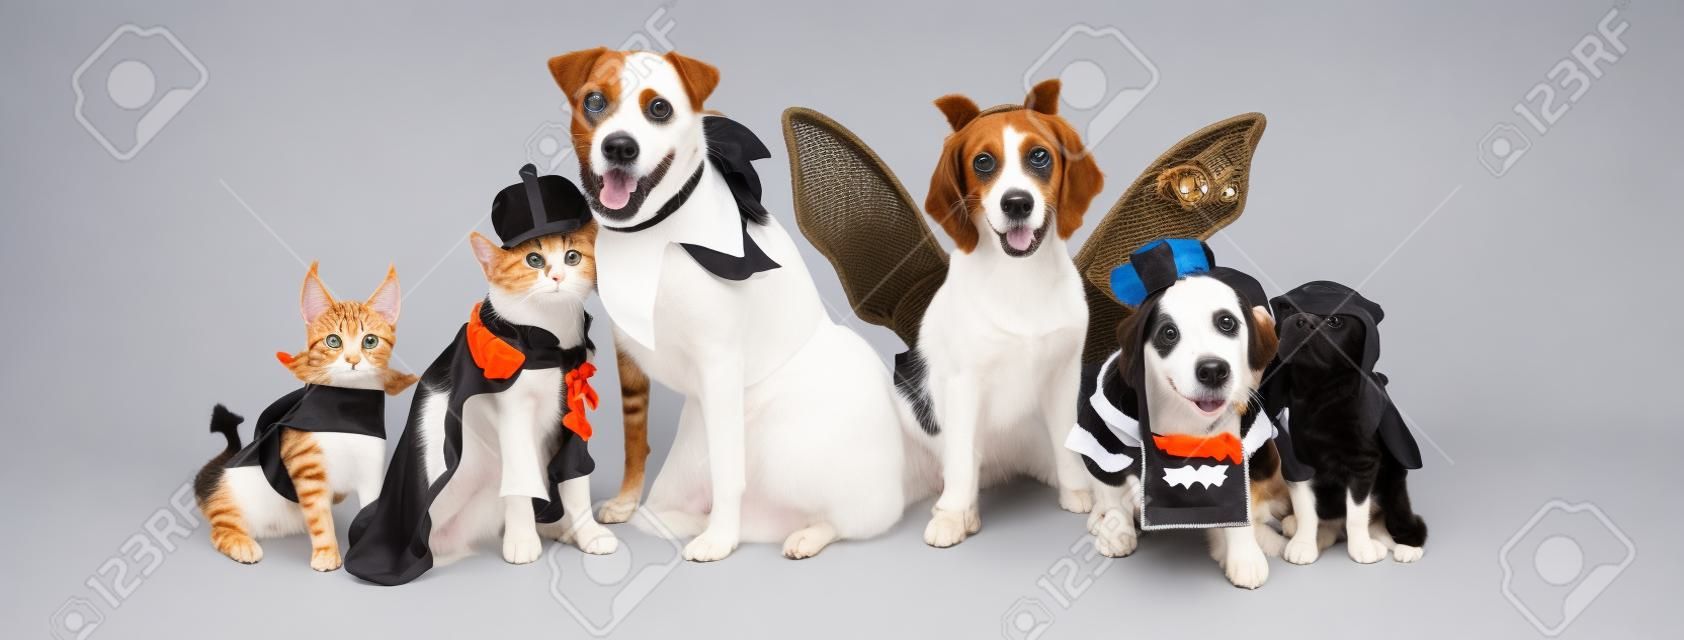 Reihe von Hunden und Katzen, die zusammen niedliche Halloween-Kostüme tragen. Webbanner oder Social-Media-Header auf Weiß.